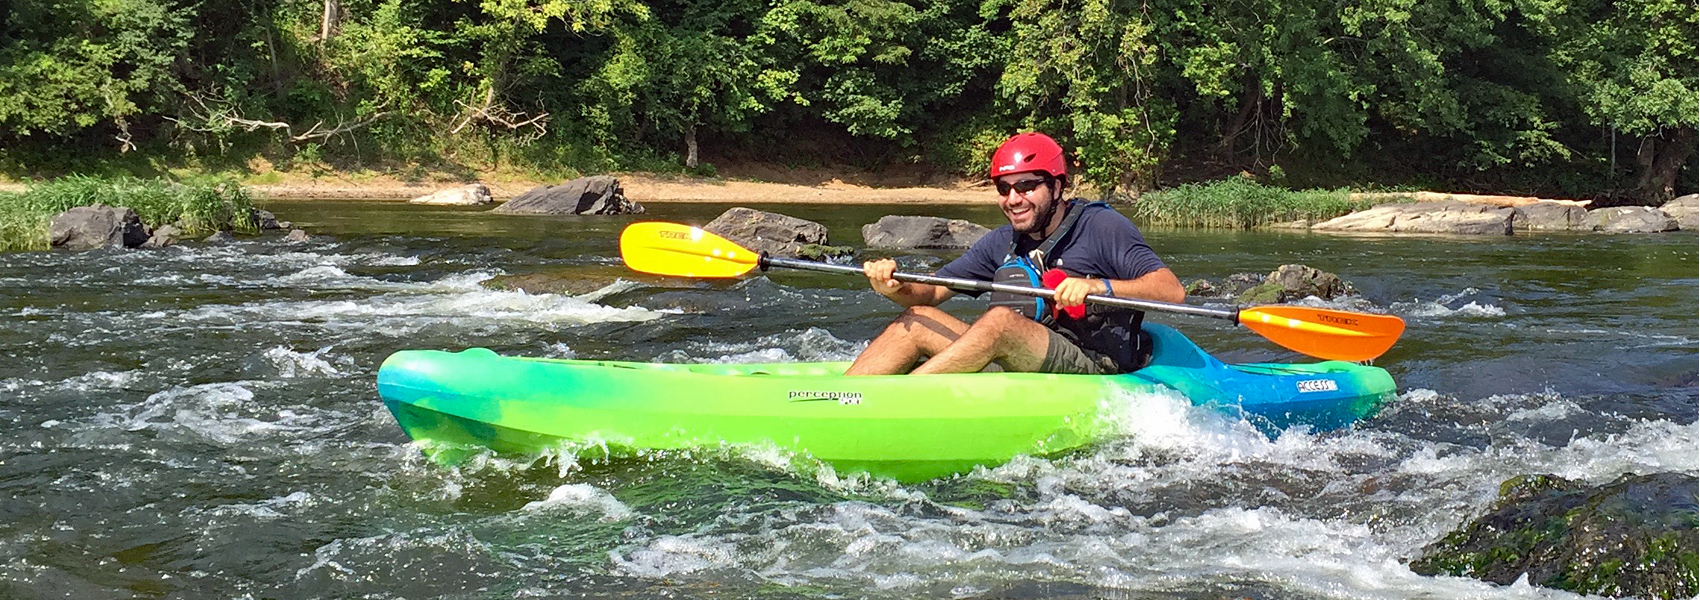 A kayaker runs a rapids near Riverbend Park